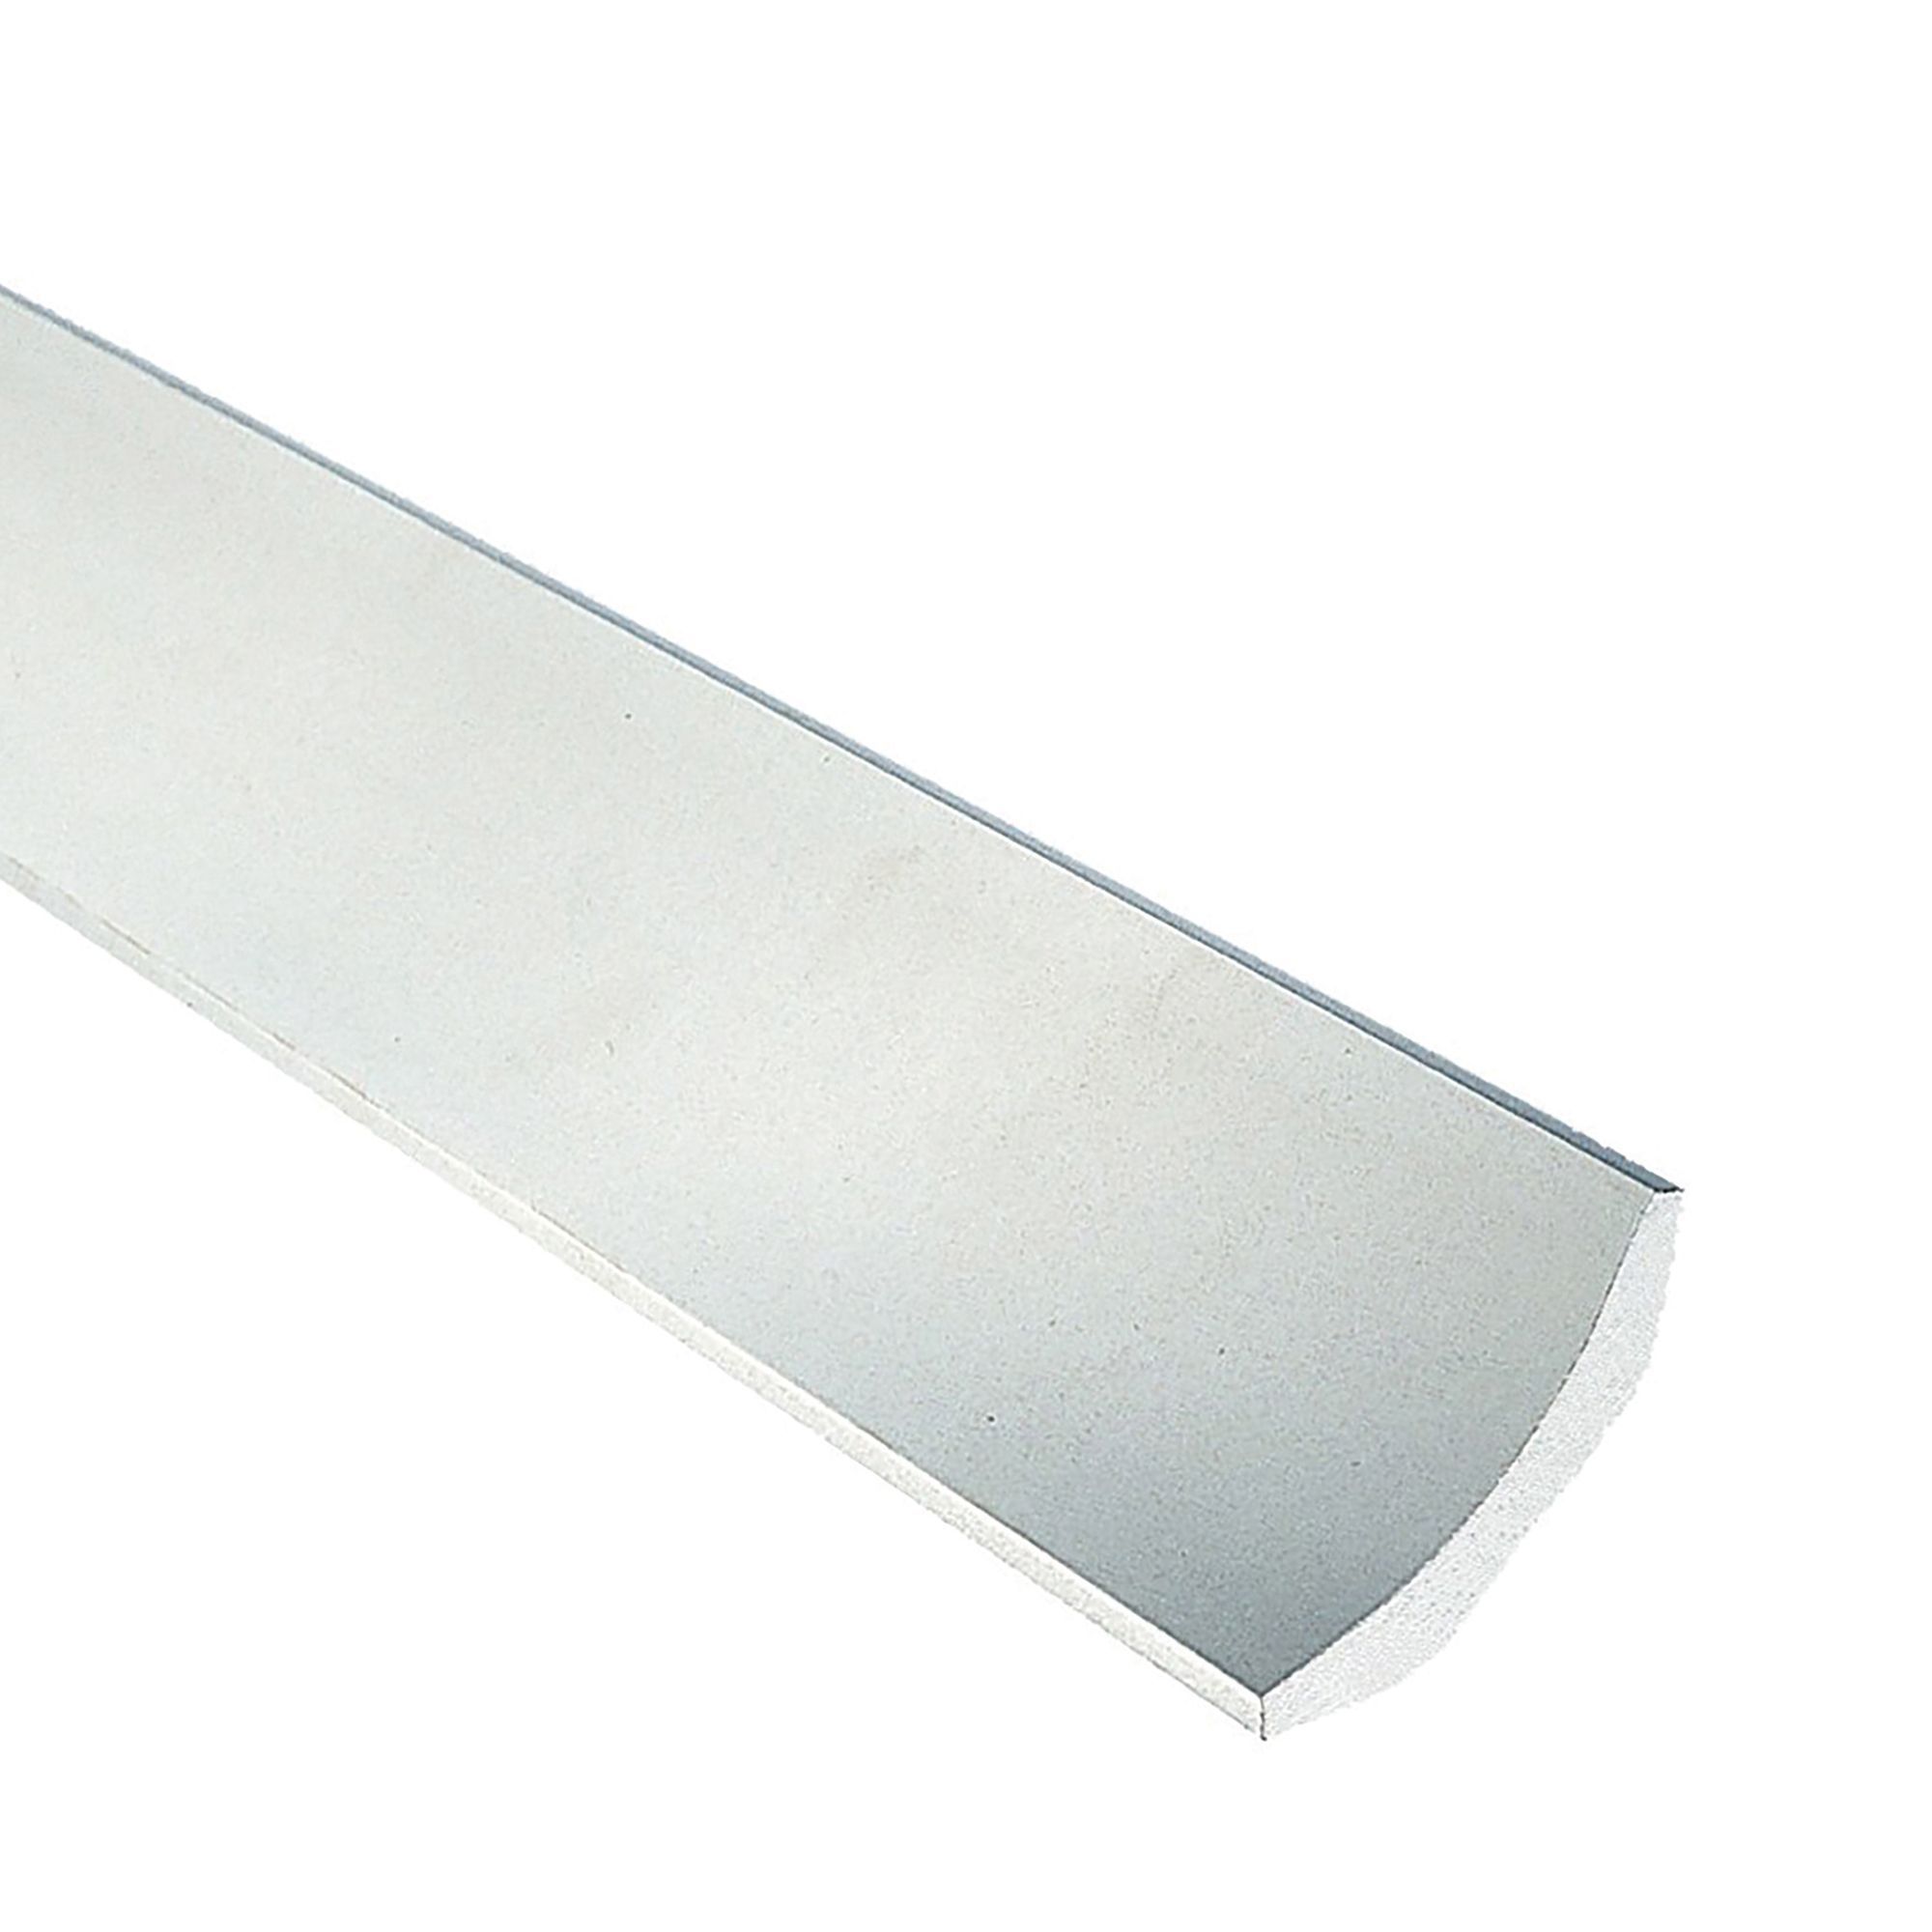 Artex Easifix Classic C-shaped Plaster Coving (L)2m (W)100mm, Pack of 6